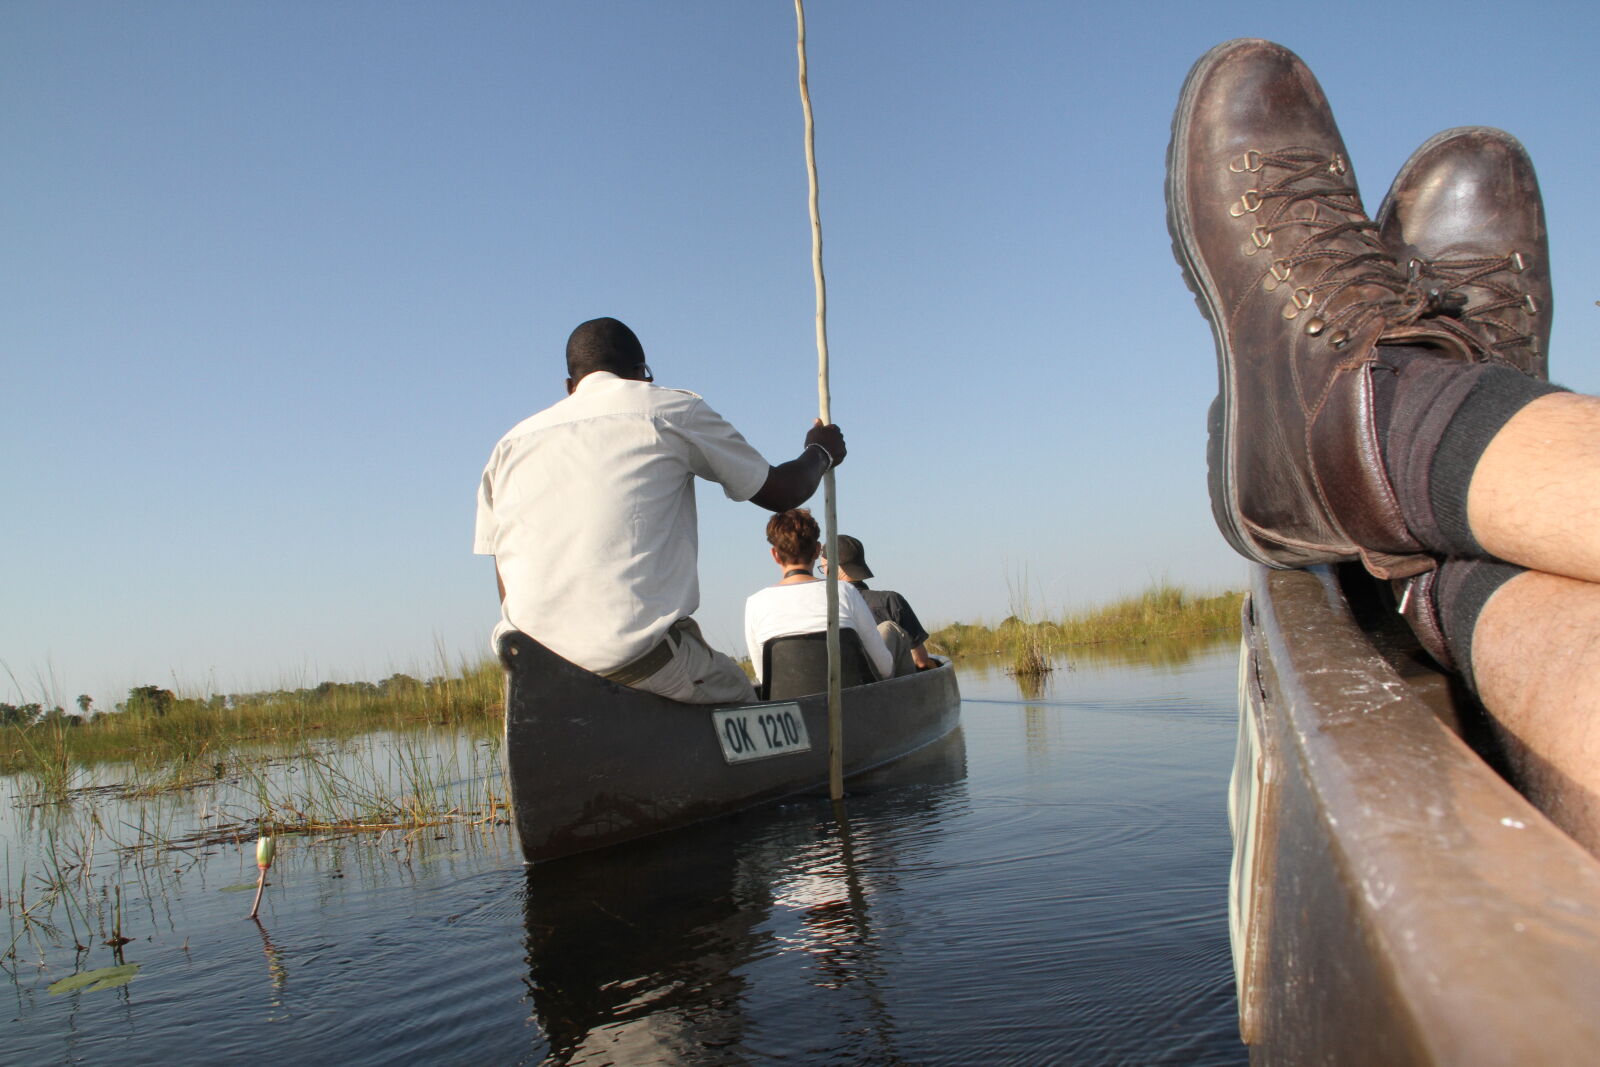 Canon EOS 7D sample photo. Botswana, hippos, okawango, delta photography